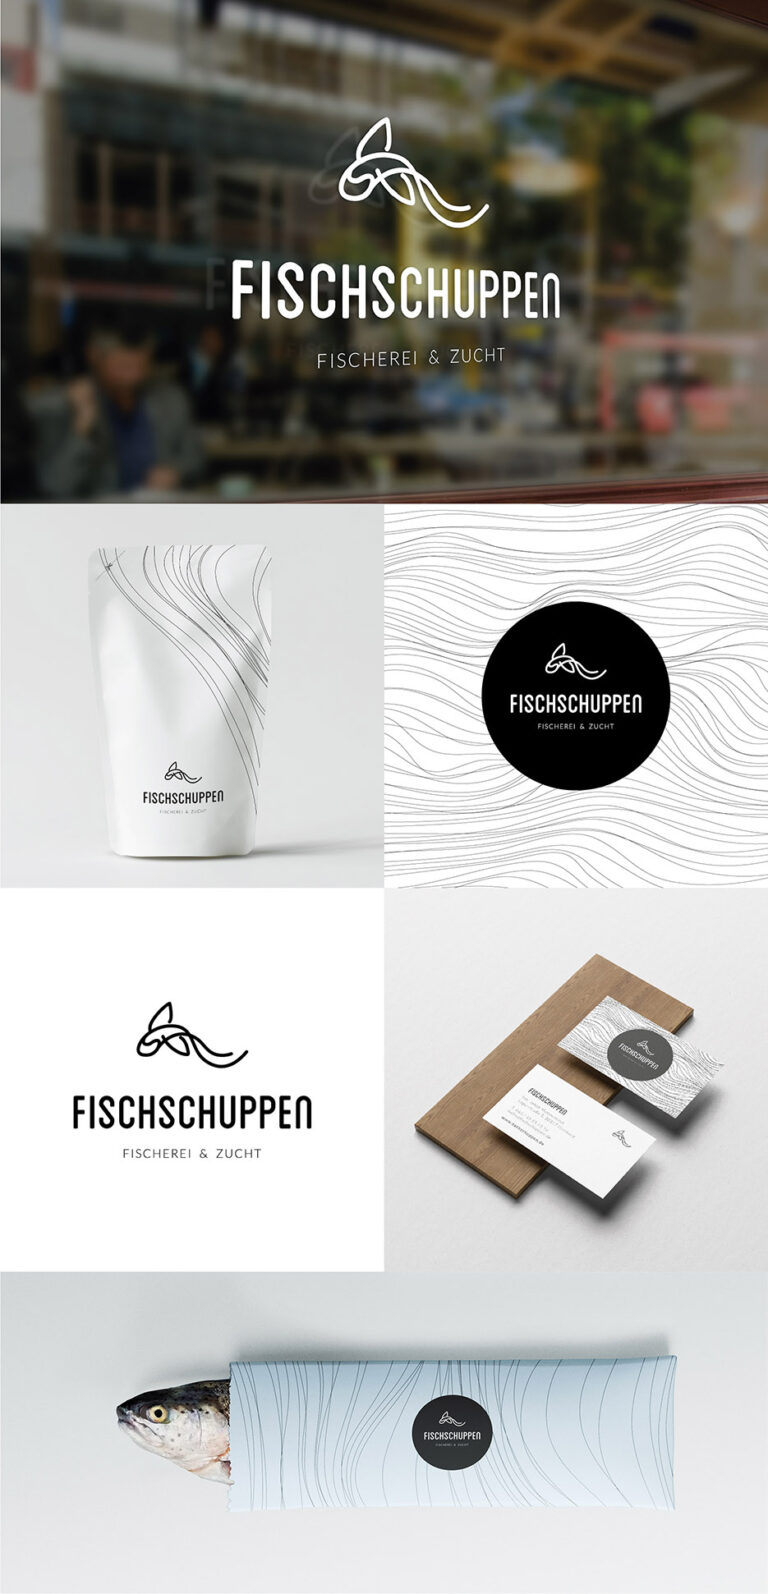 Portfolio Grafikdesign - Portfolio Grafikdesign - Logogestaltung und Geschäftsausstattung für Fischladen